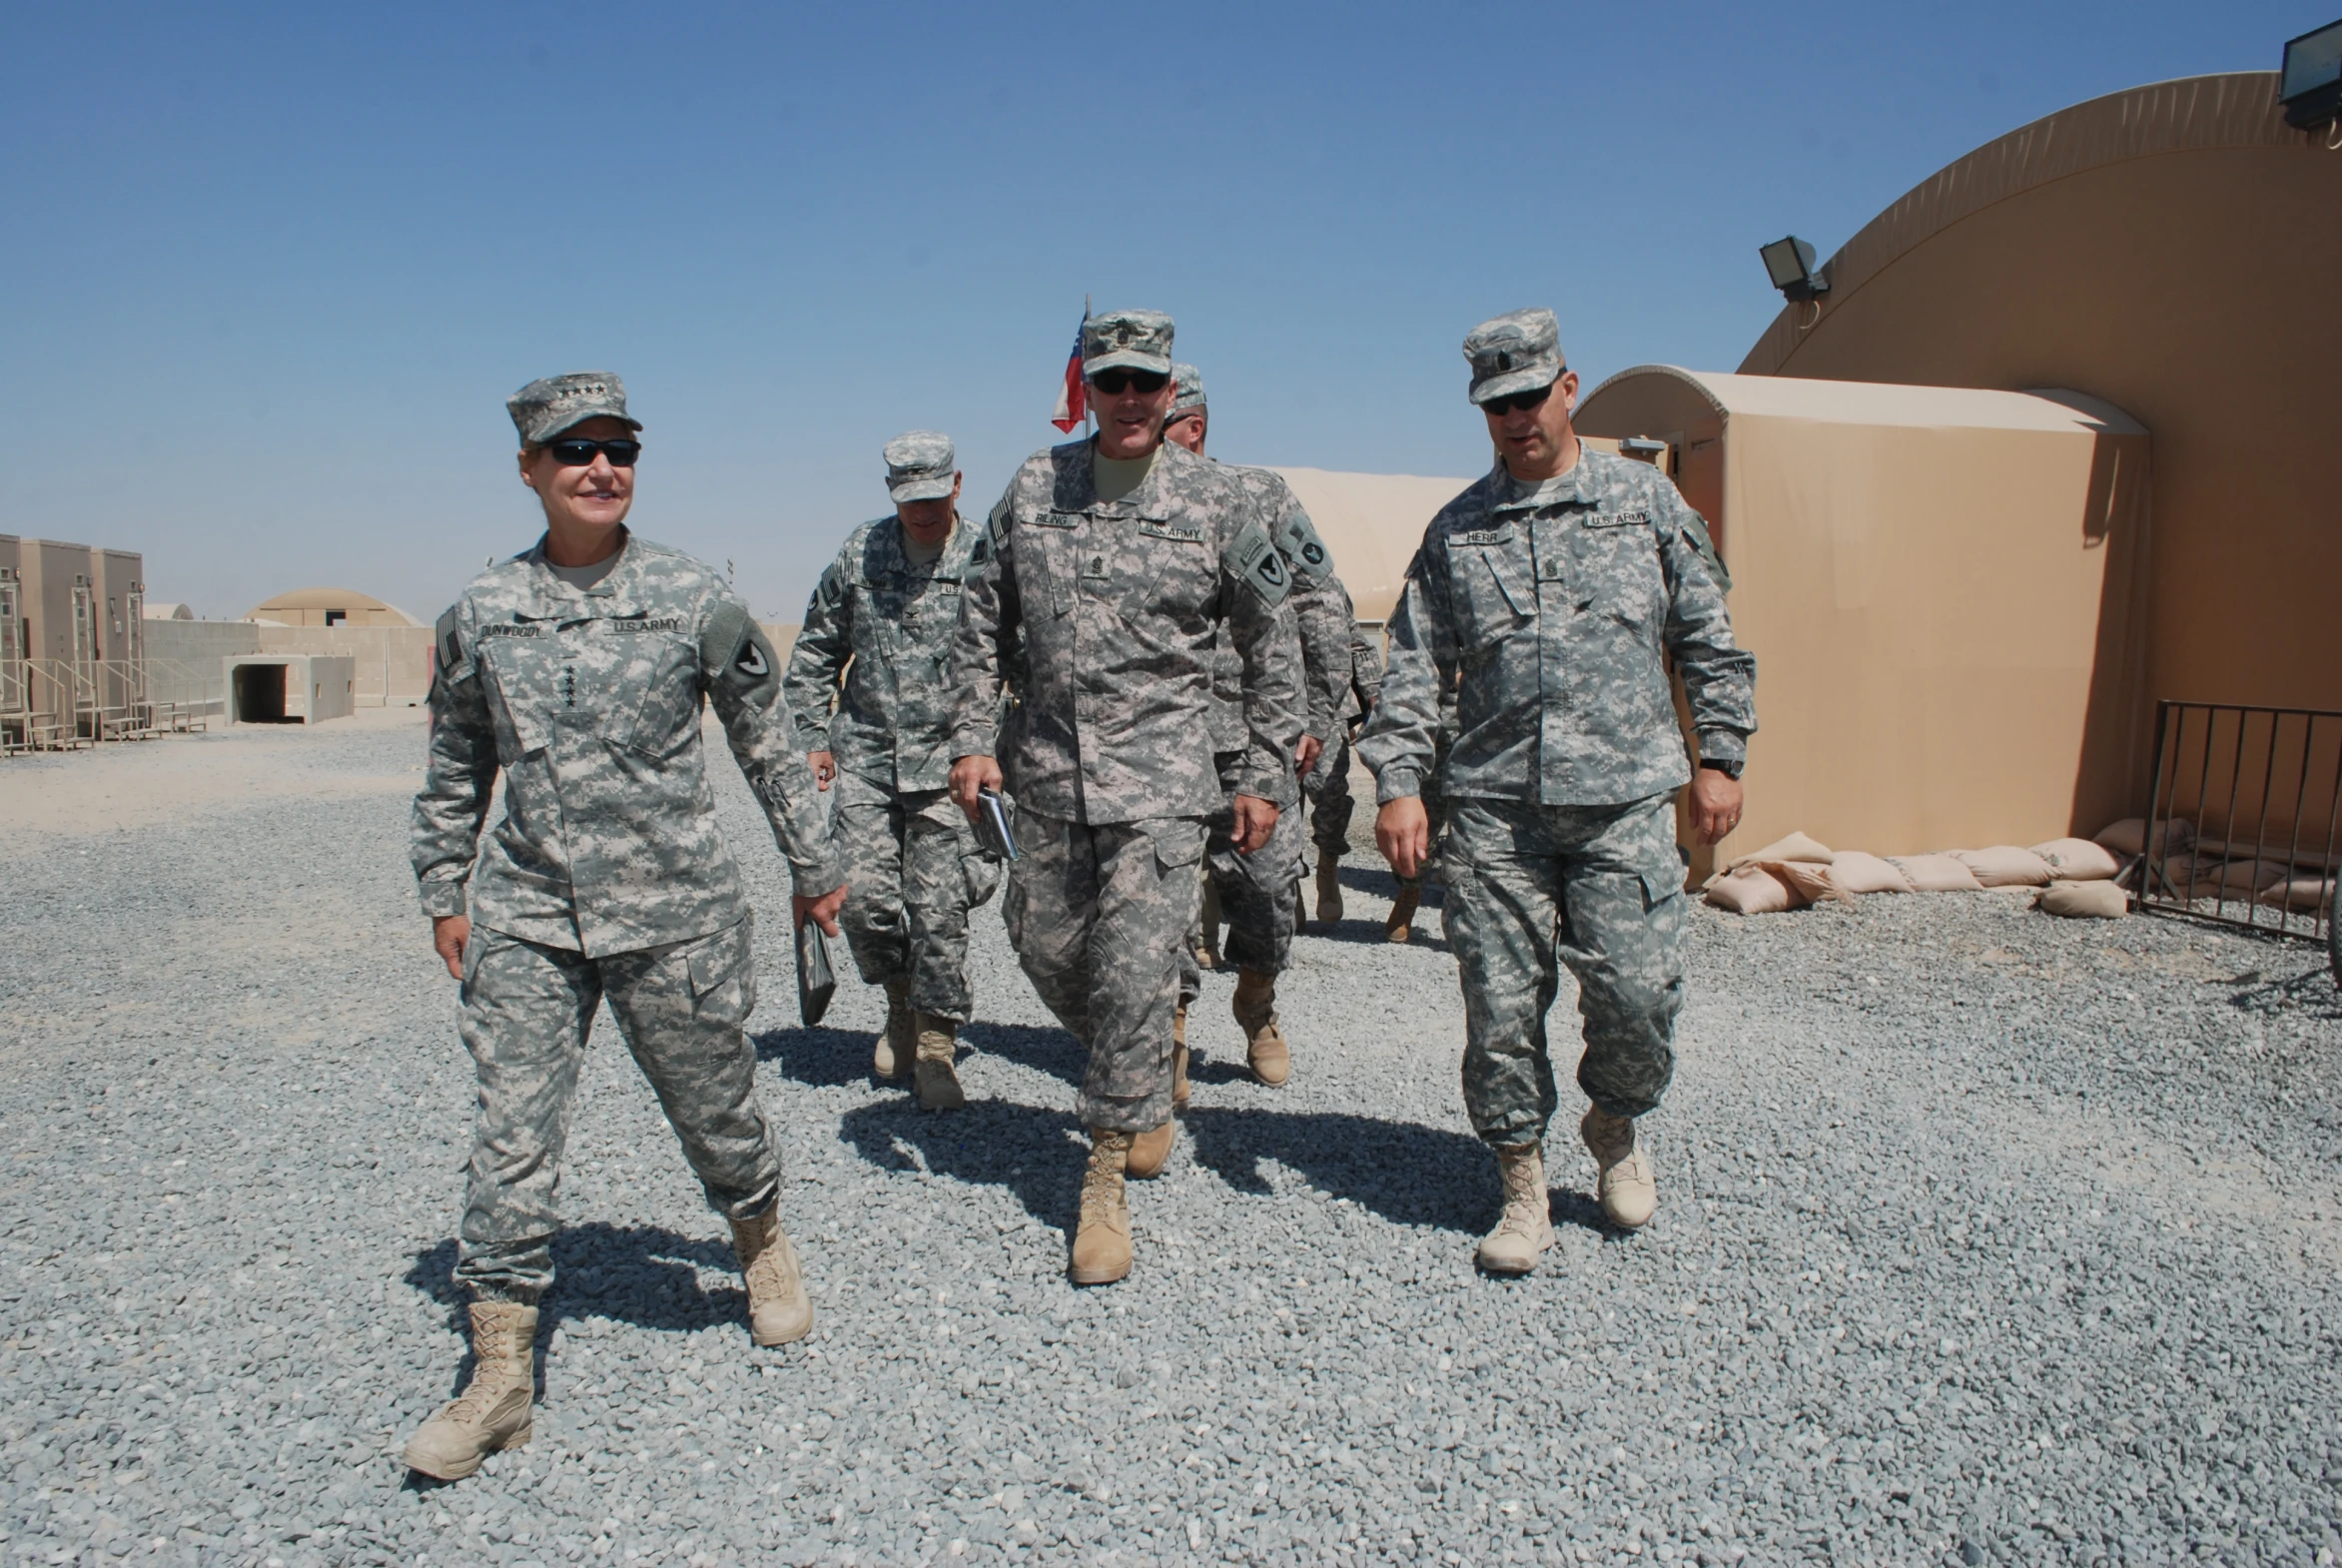 four men in uniforms walking across a gravel lot